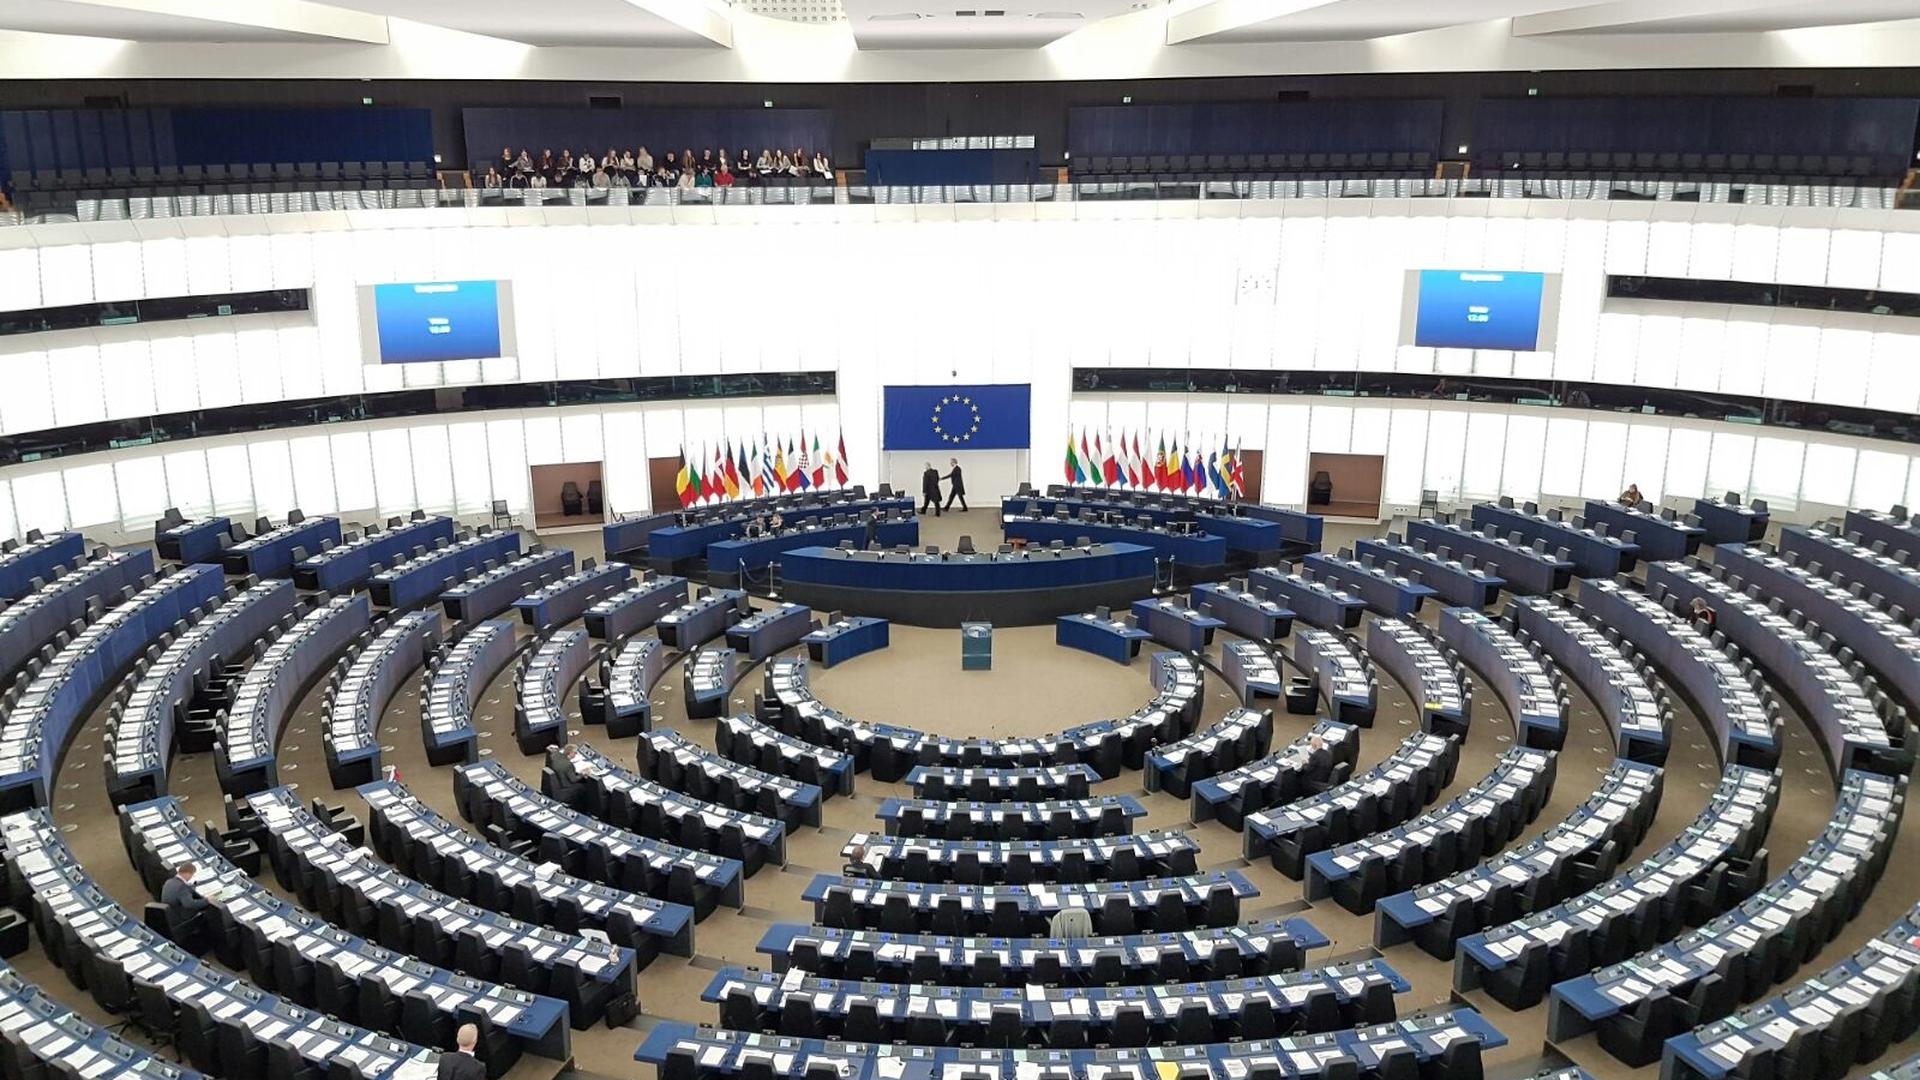 Le Parlement européen avait déclenché en 2018 une procédure à l'encontre de la Hongrie pour «risque de violation grave des valeurs européennes».